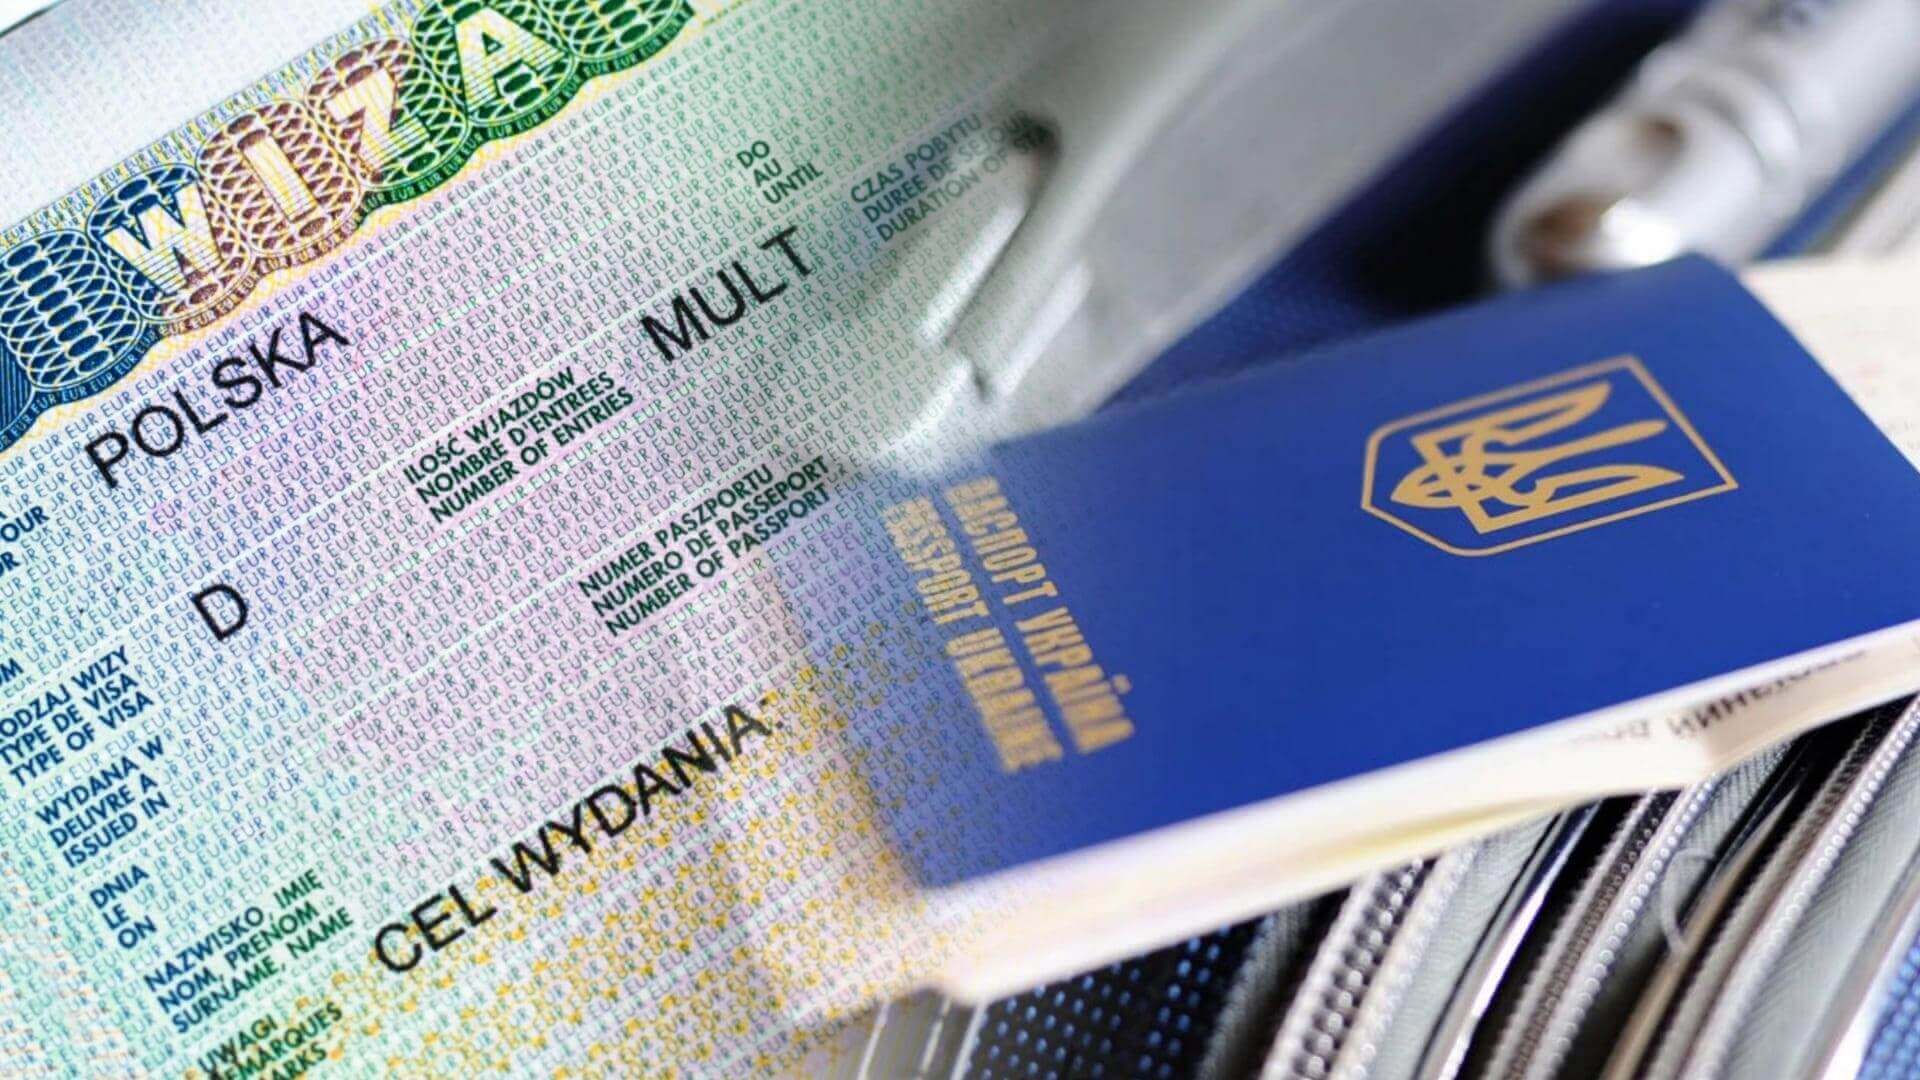 Страхование для поездок по шенгенской визе: путешествуйте спокойно и уверенно 